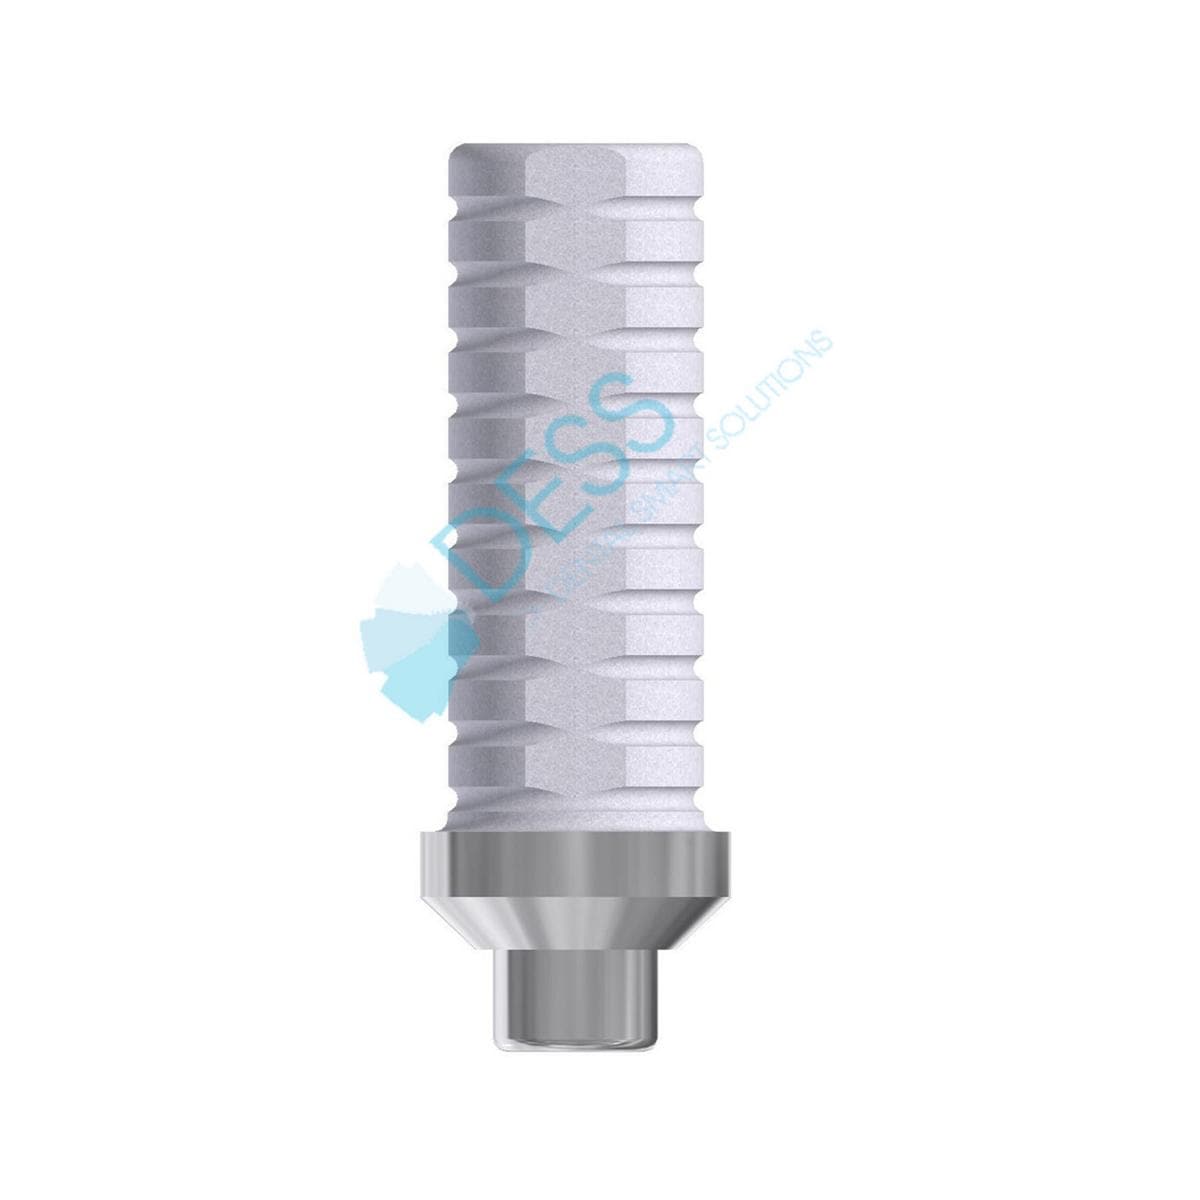 Provisorisches Titanabutment - kompatibel mit Zimmer Screw-Vent® - NP Ø 3,5 mm, ohne Rotationsschutz